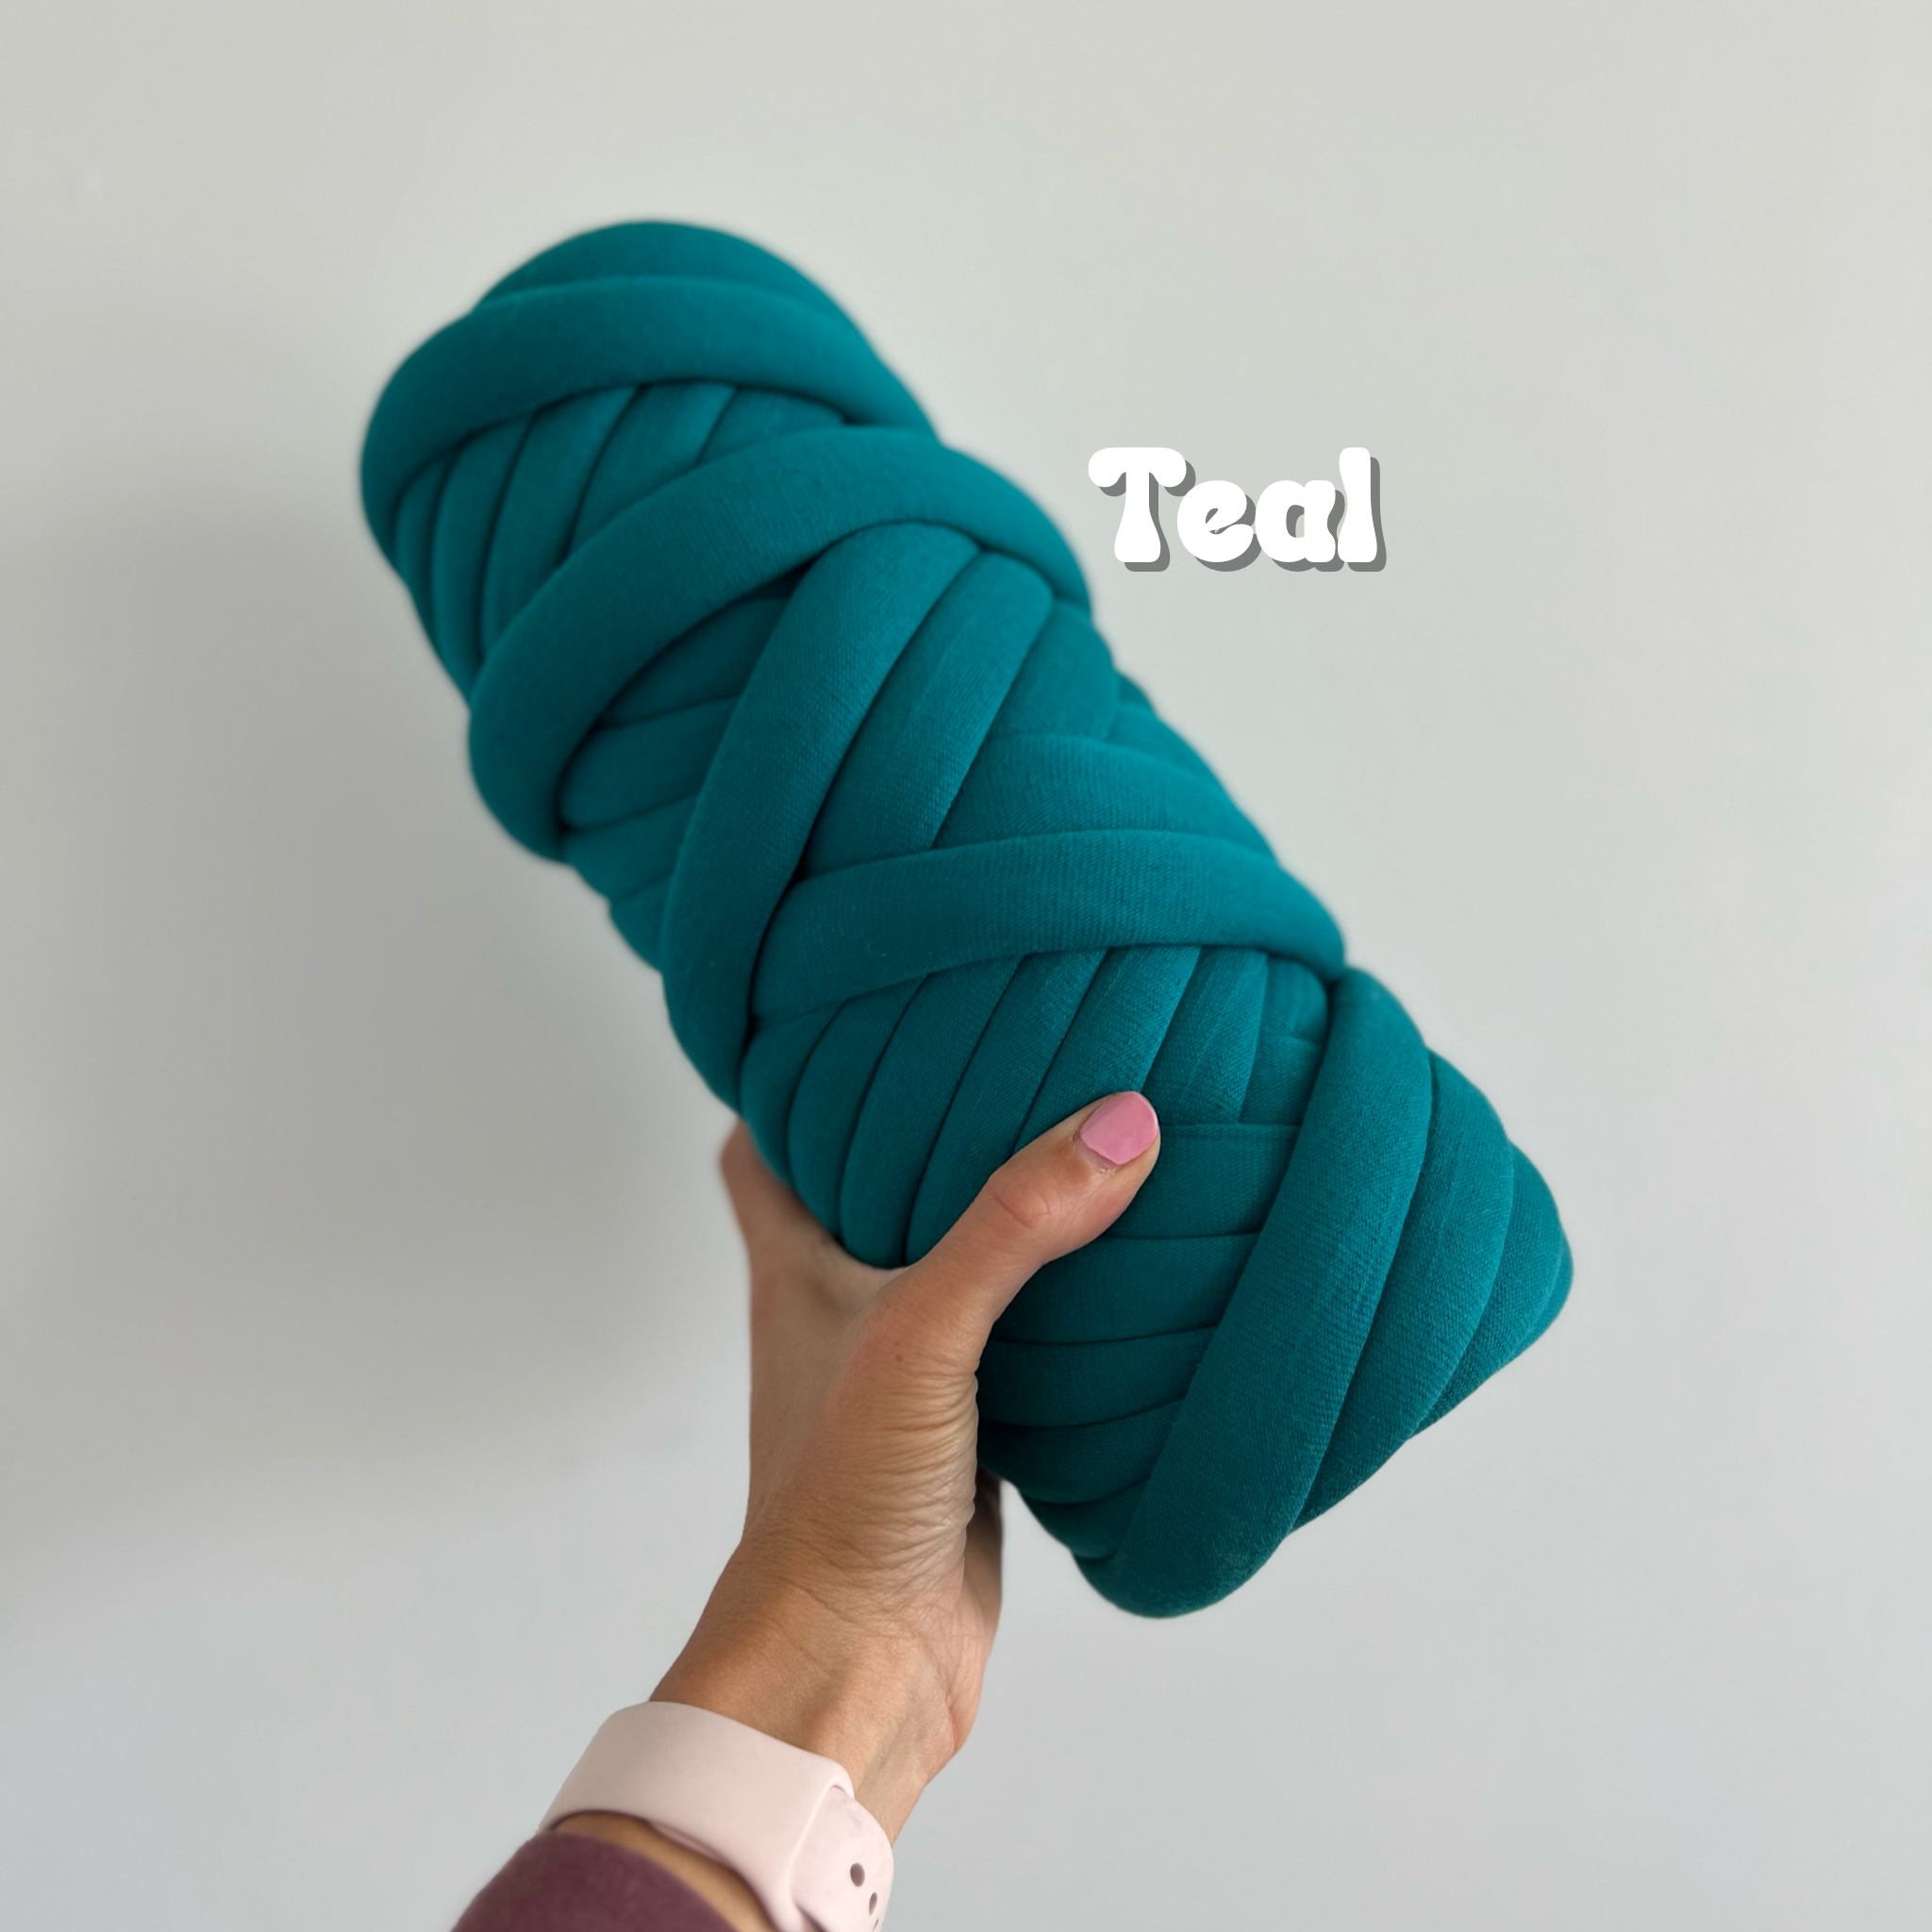 Cotton Yarn, Cotton Tube Yarn, Hand Knitting, Chunky Knit Yarn, Bulky Yarn,  Jumbo Yarn, Giant Yarn 